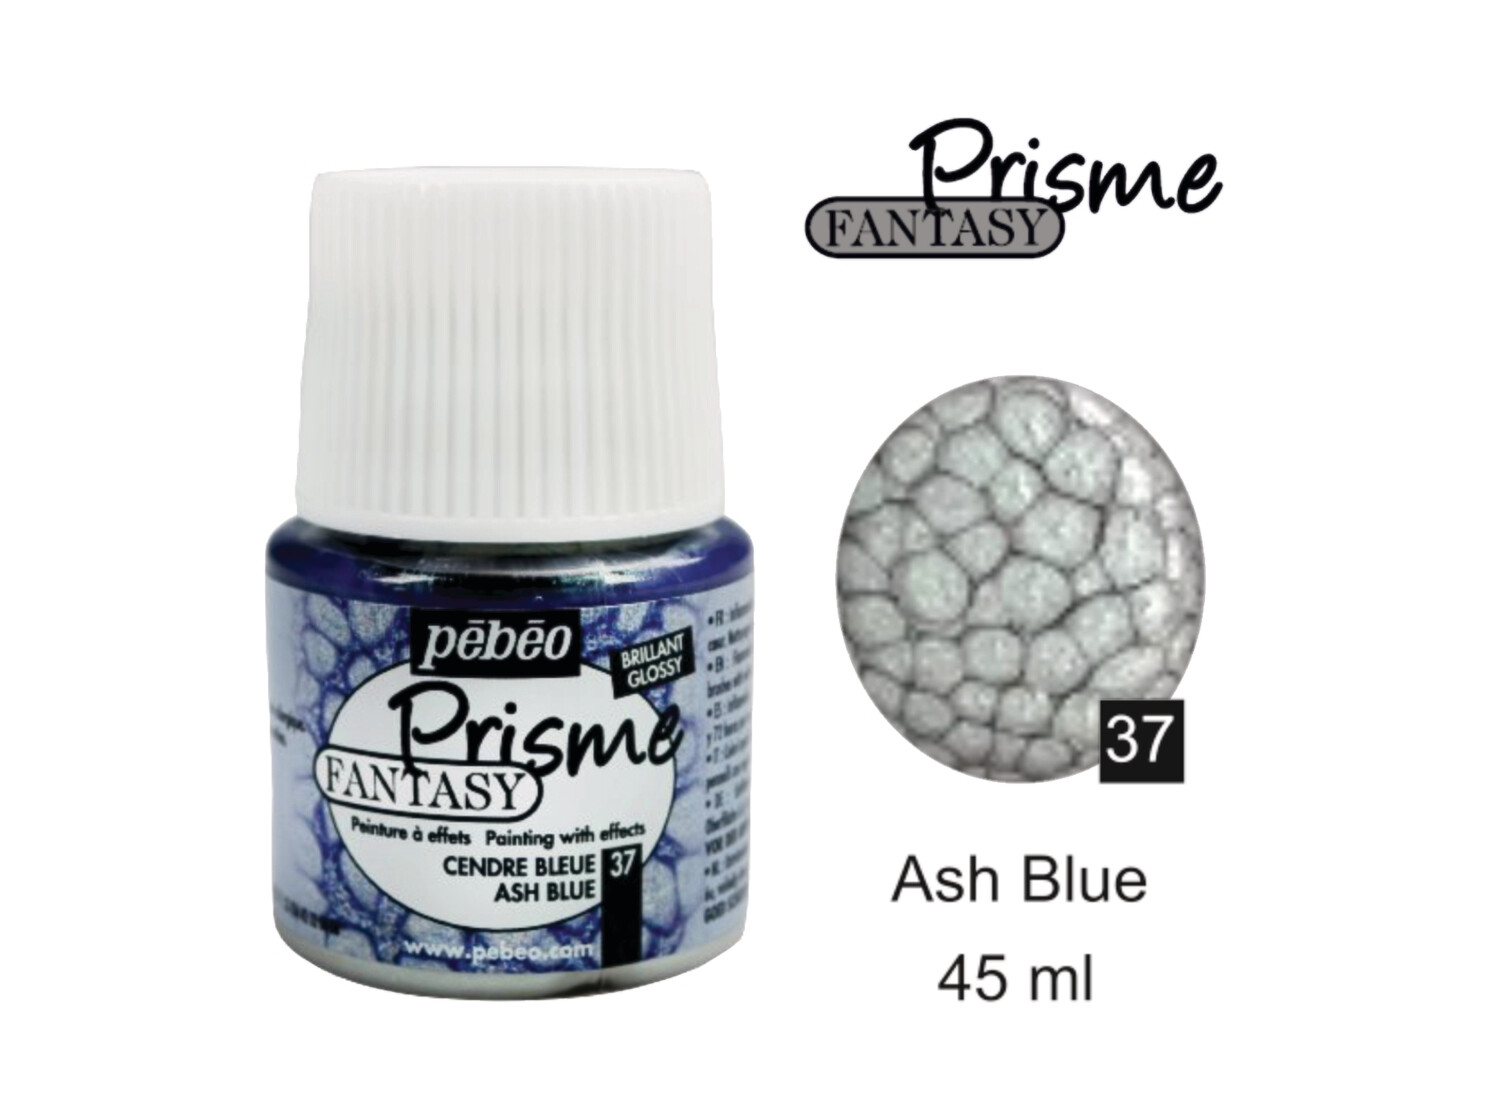 Fantasy Presme Decorative color Ash blue No. 37 , 45 ml